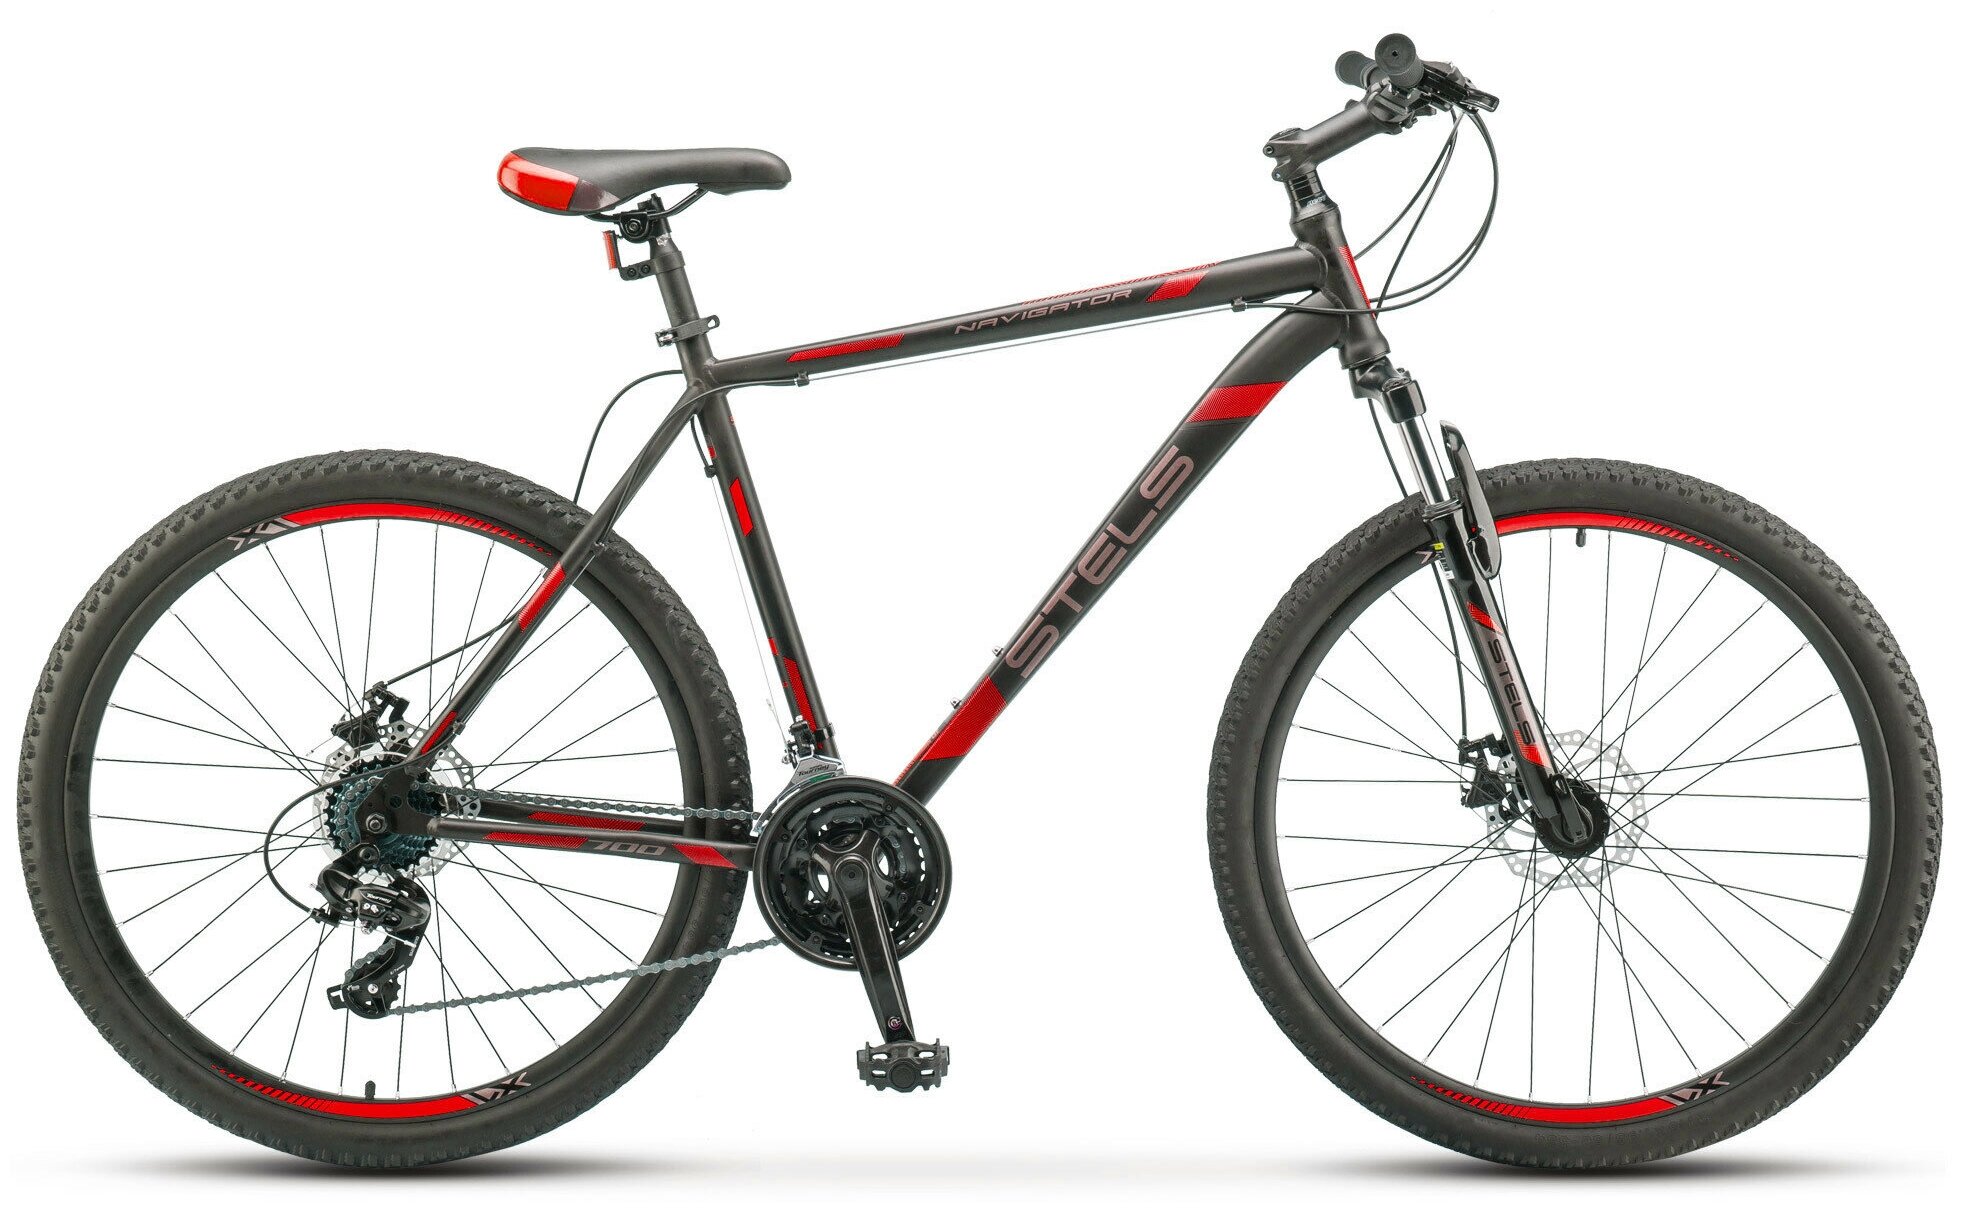 Горный (MTB) велосипед STELS Navigator 700 MD 27.5 F010 (2019)